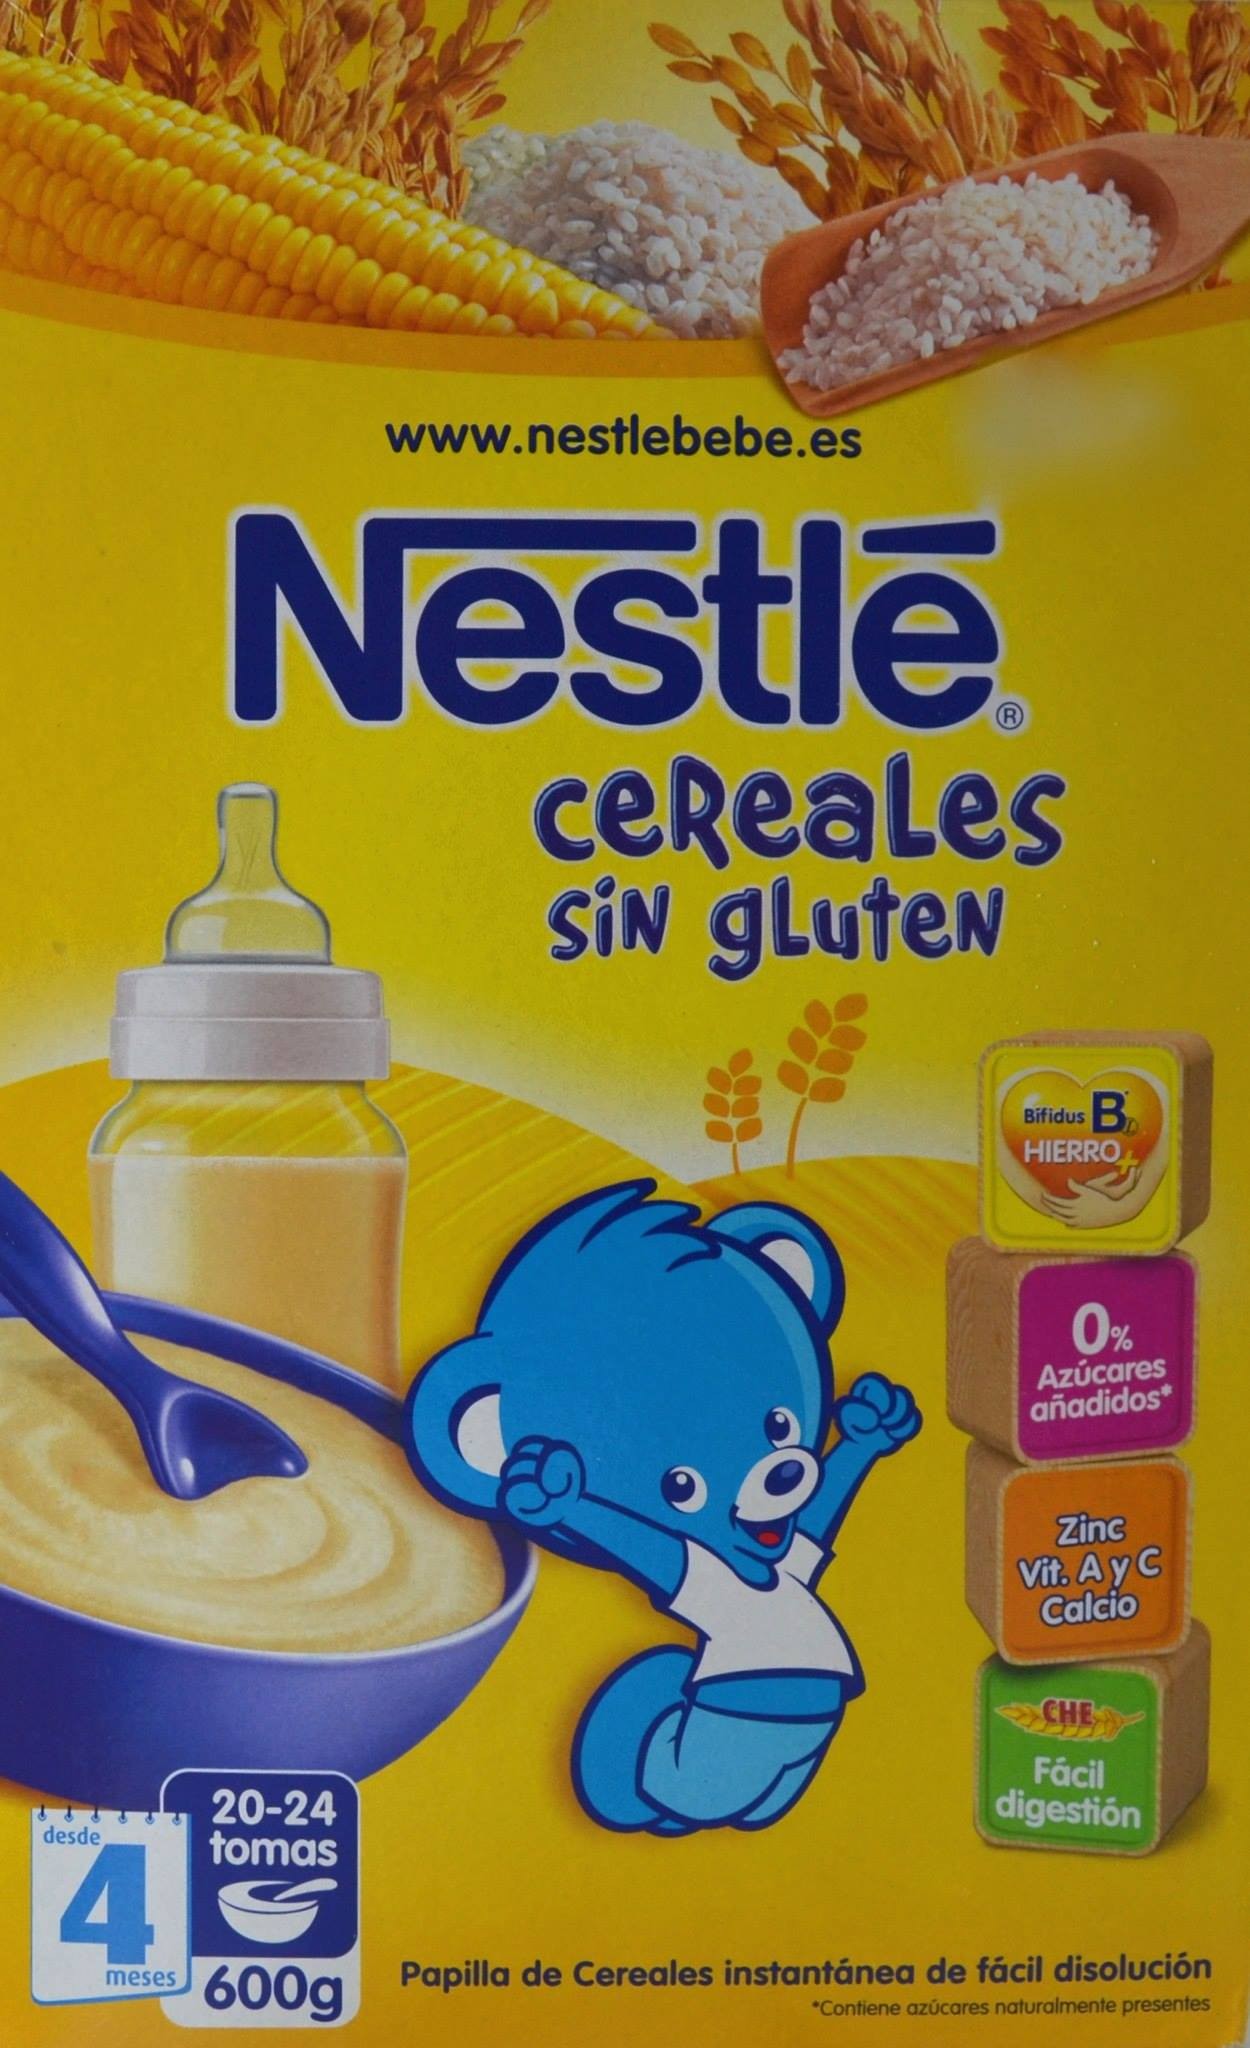 Papilla de cereales sin gluten Nestlé caja 500 g - Supermercados DIA